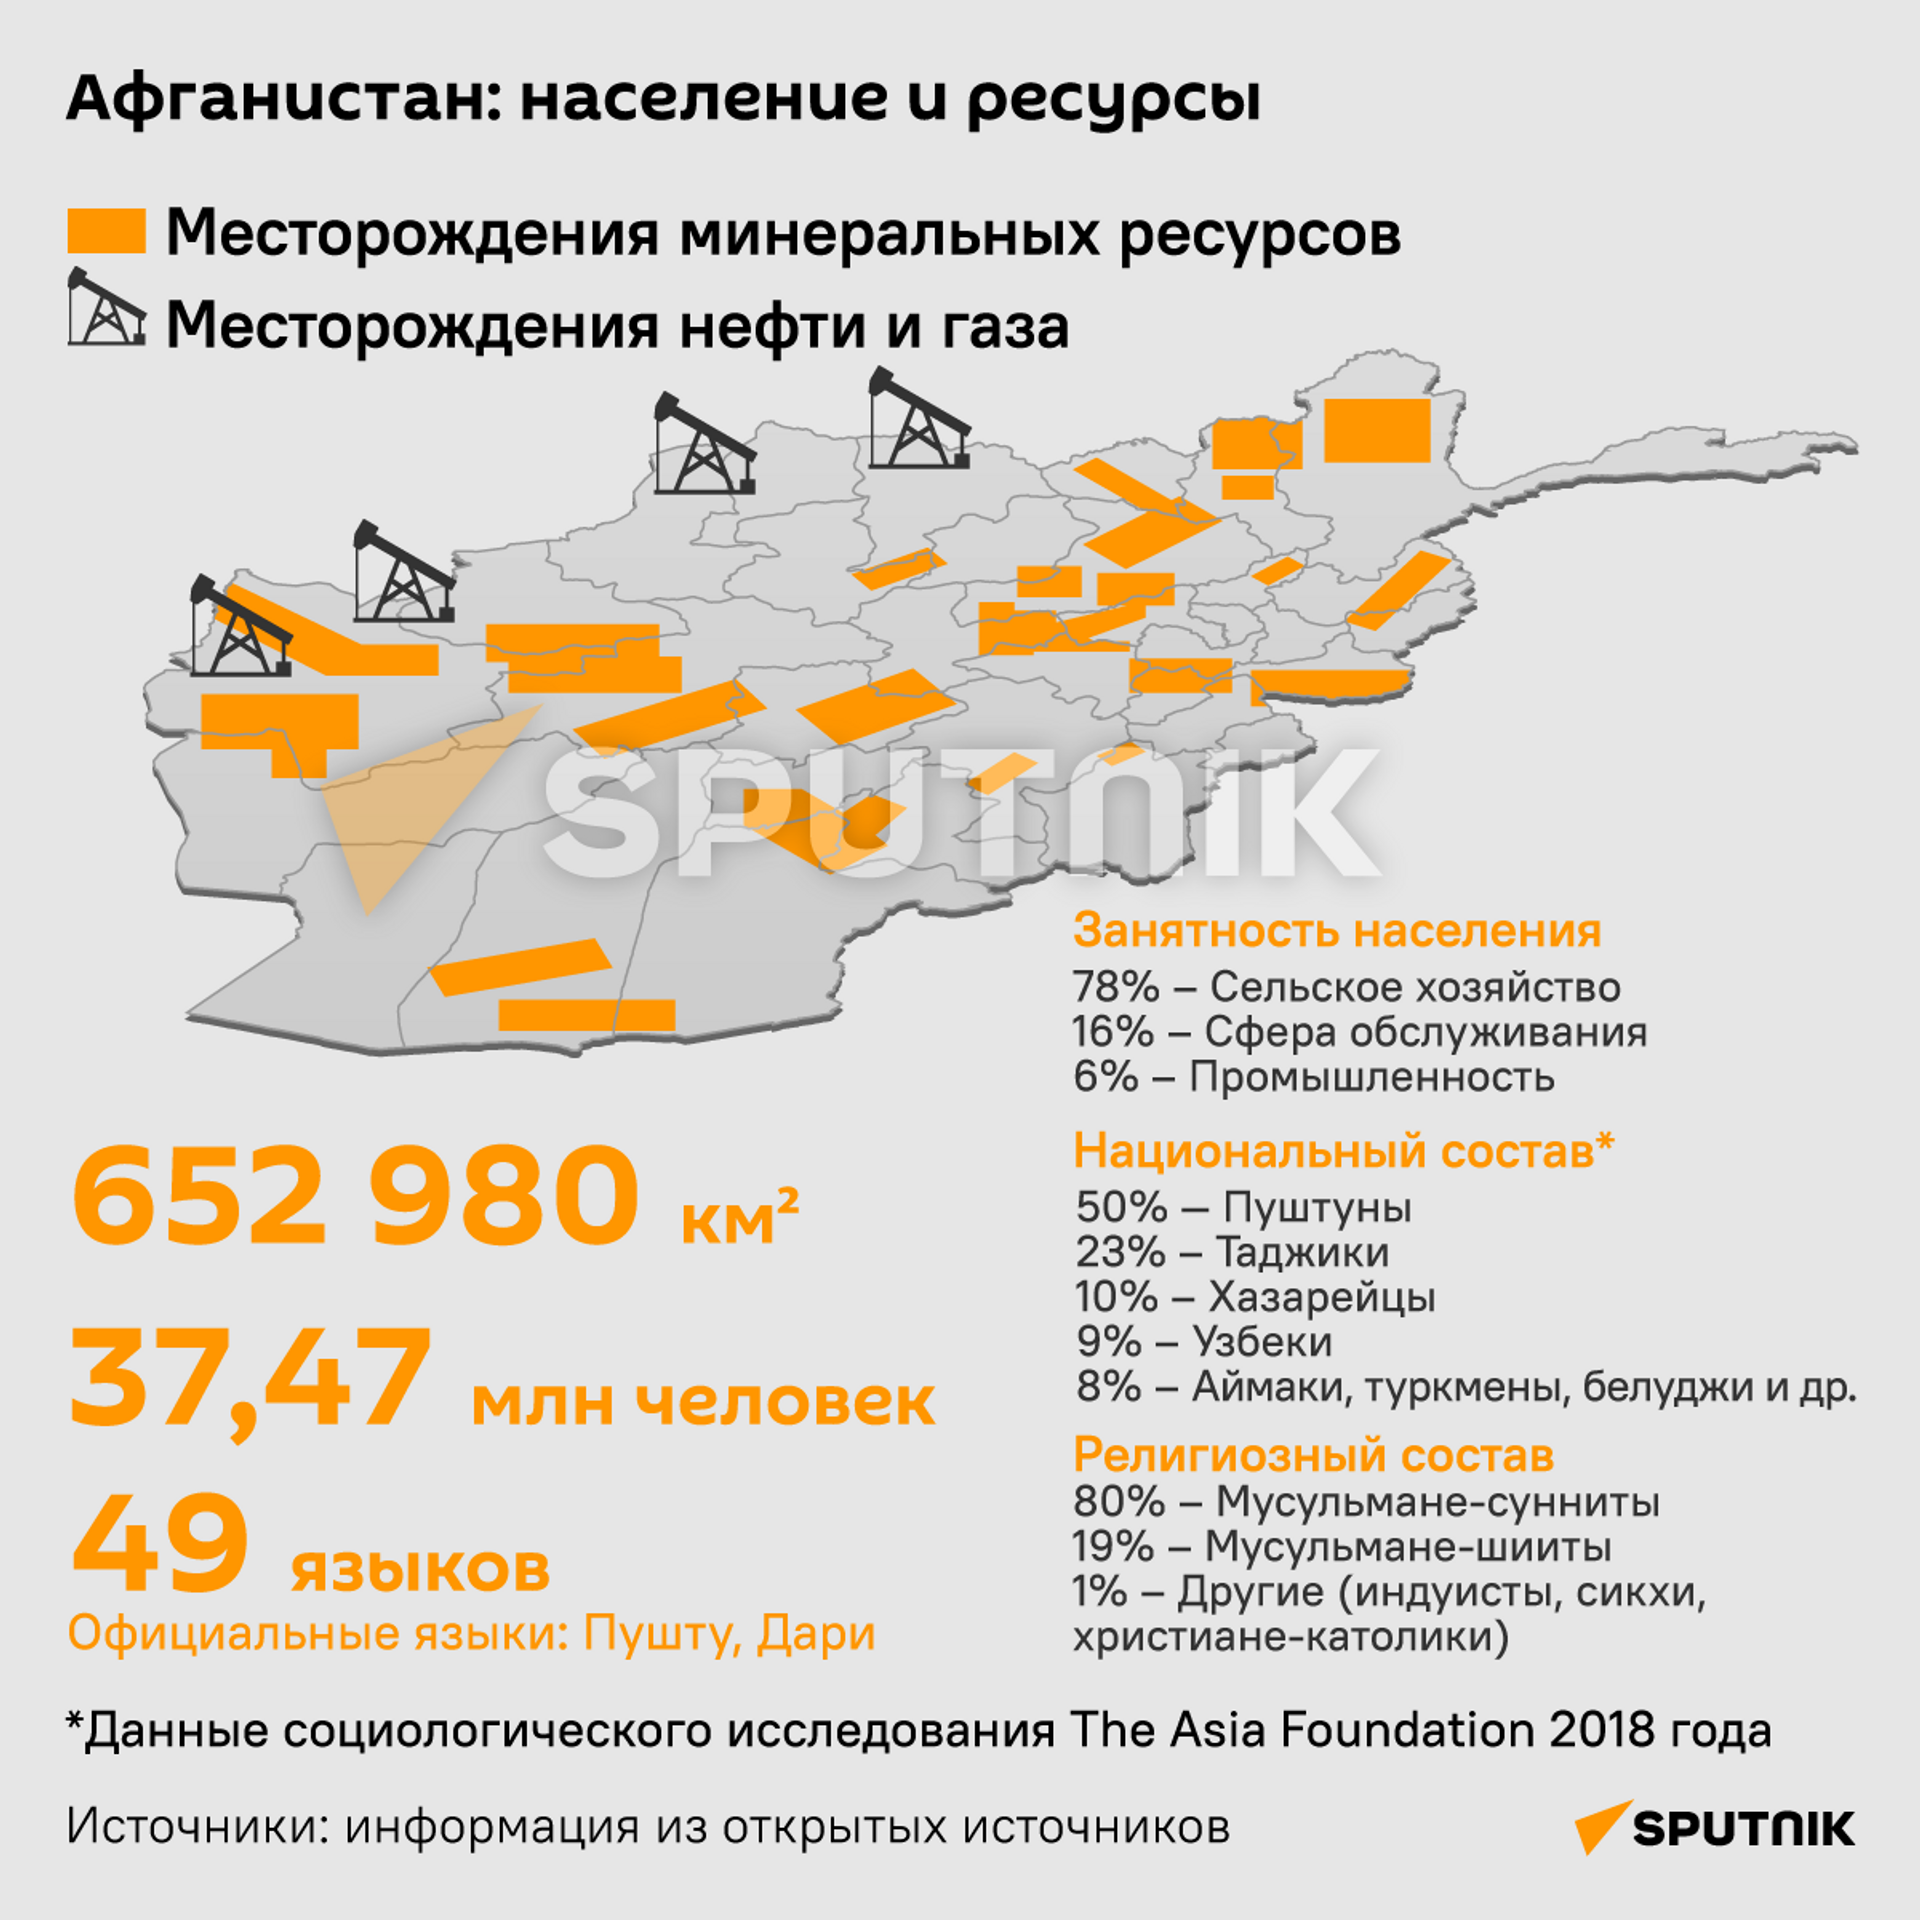 Афганистан: население и ресурсы - Sputnik Беларусь, 1920, 17.08.2021